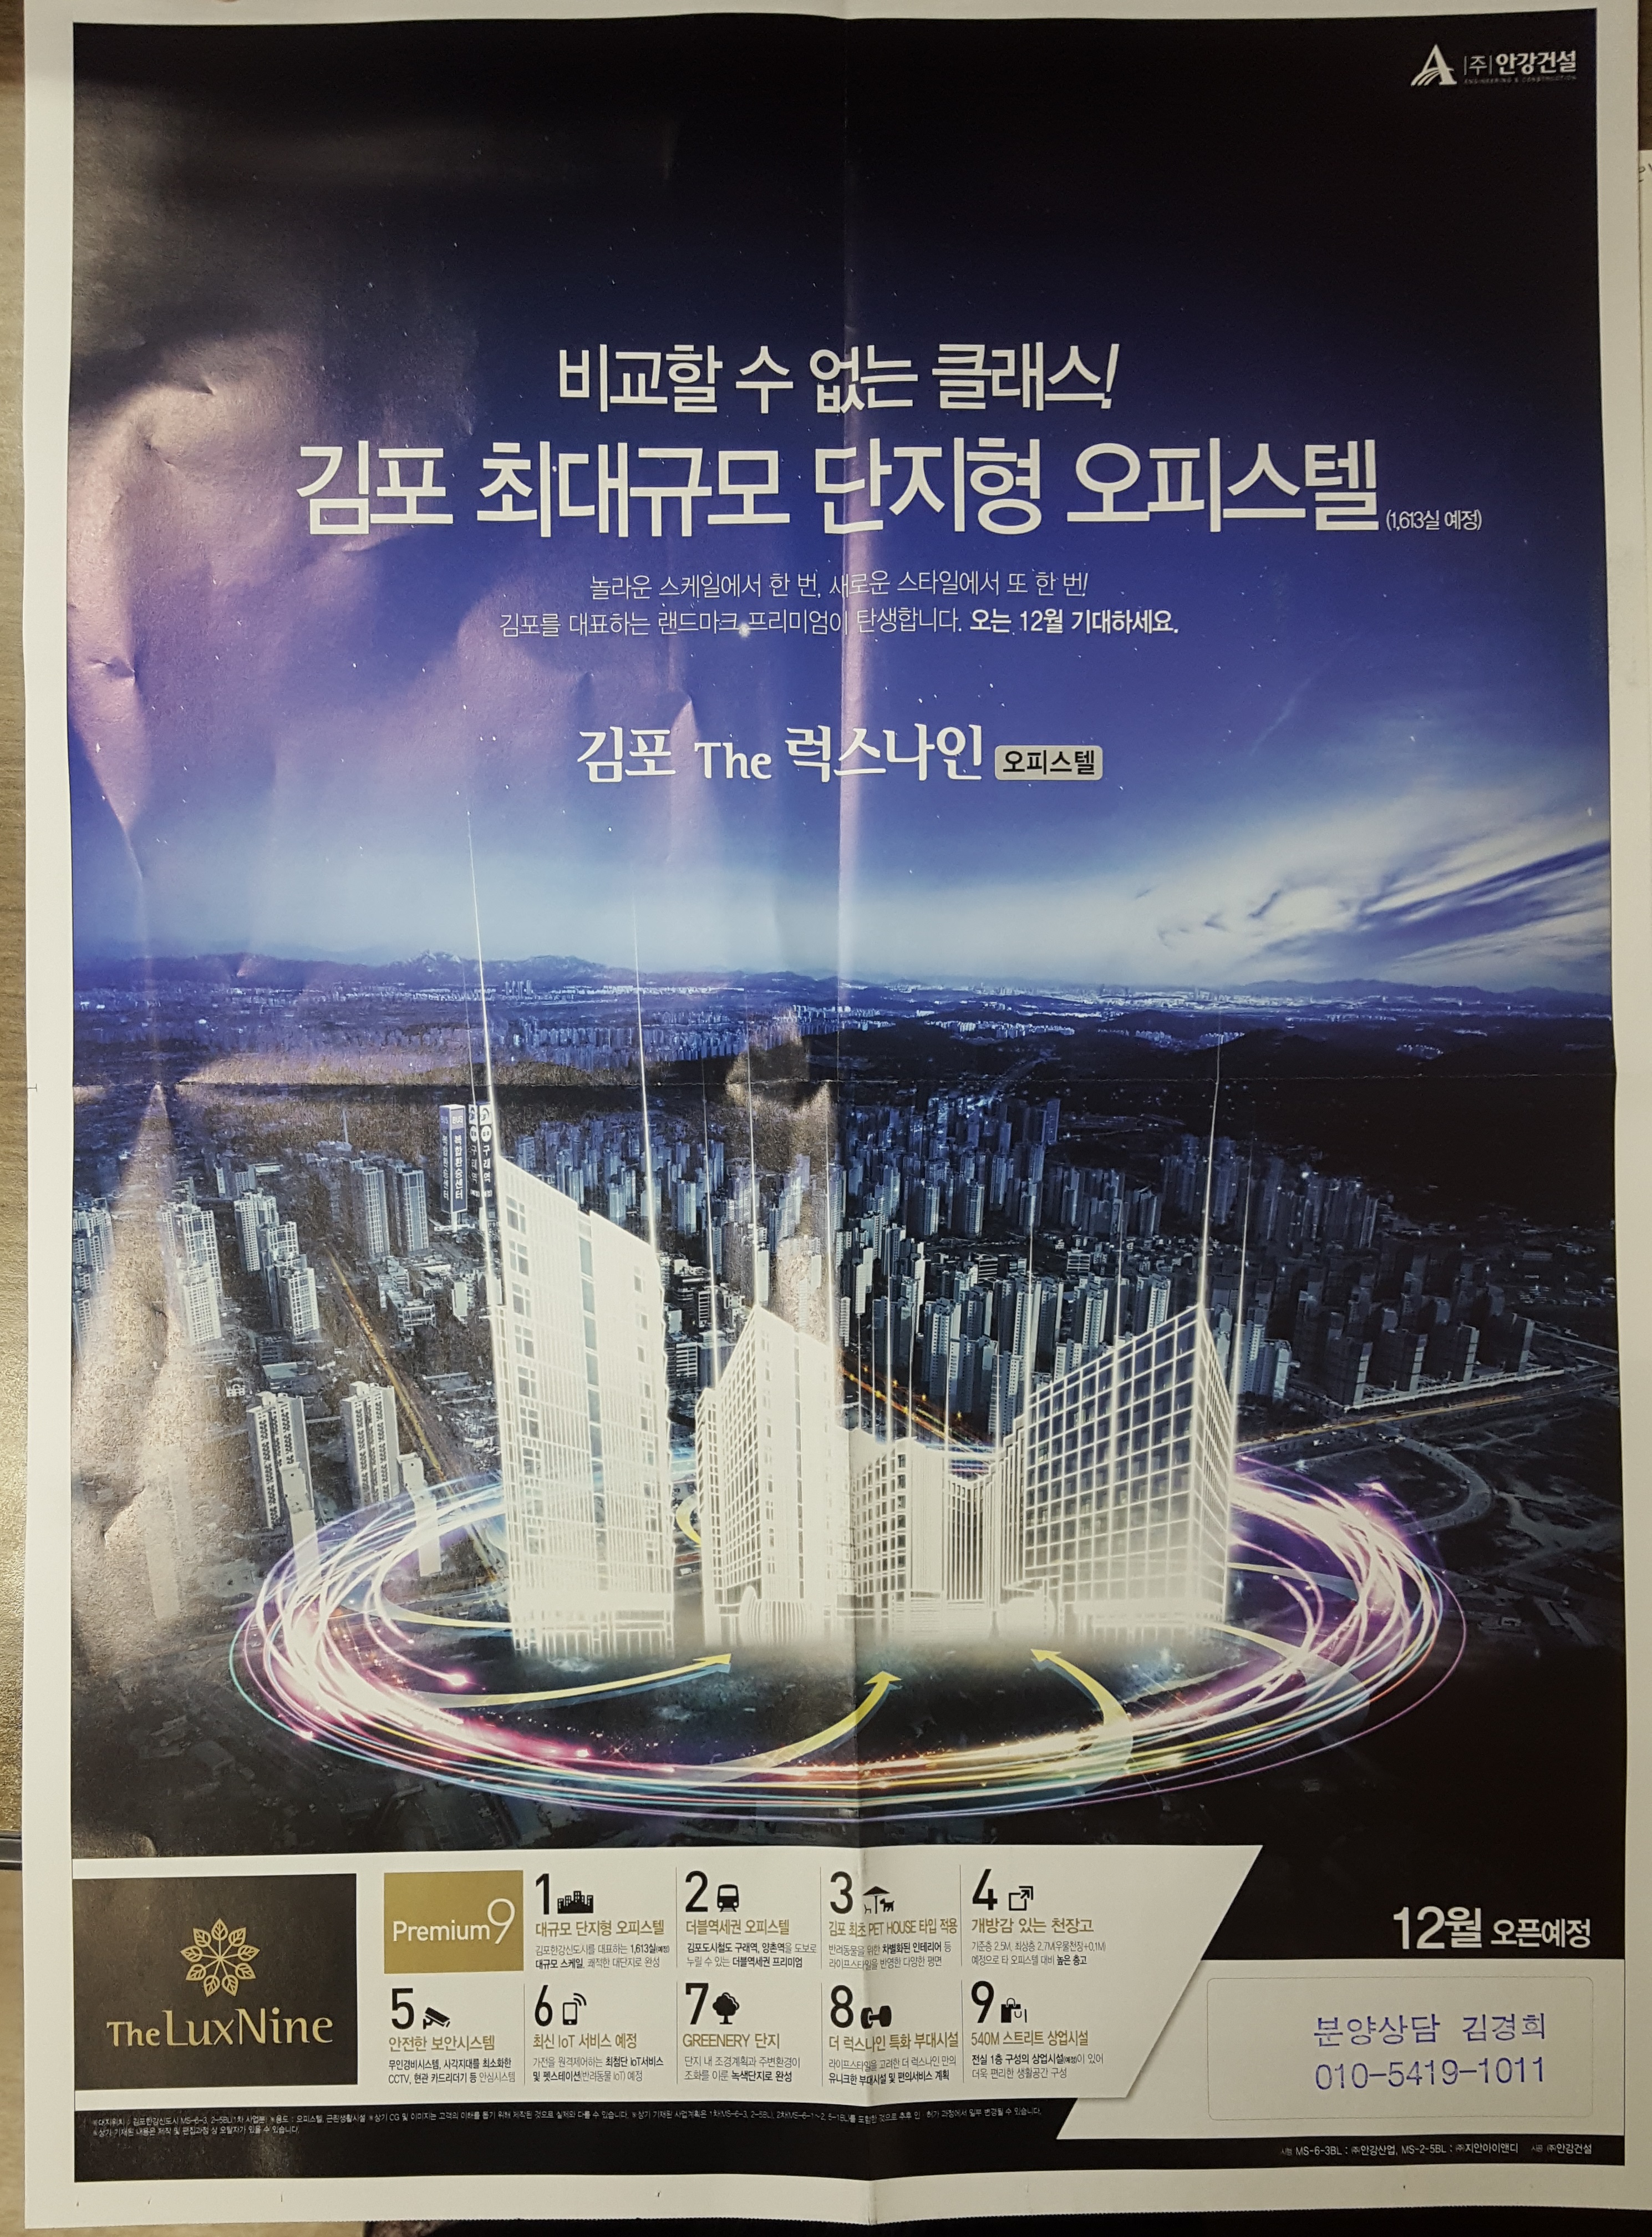 11월 29일 김포 럭스나인 전단지(삽지)앞.jpg